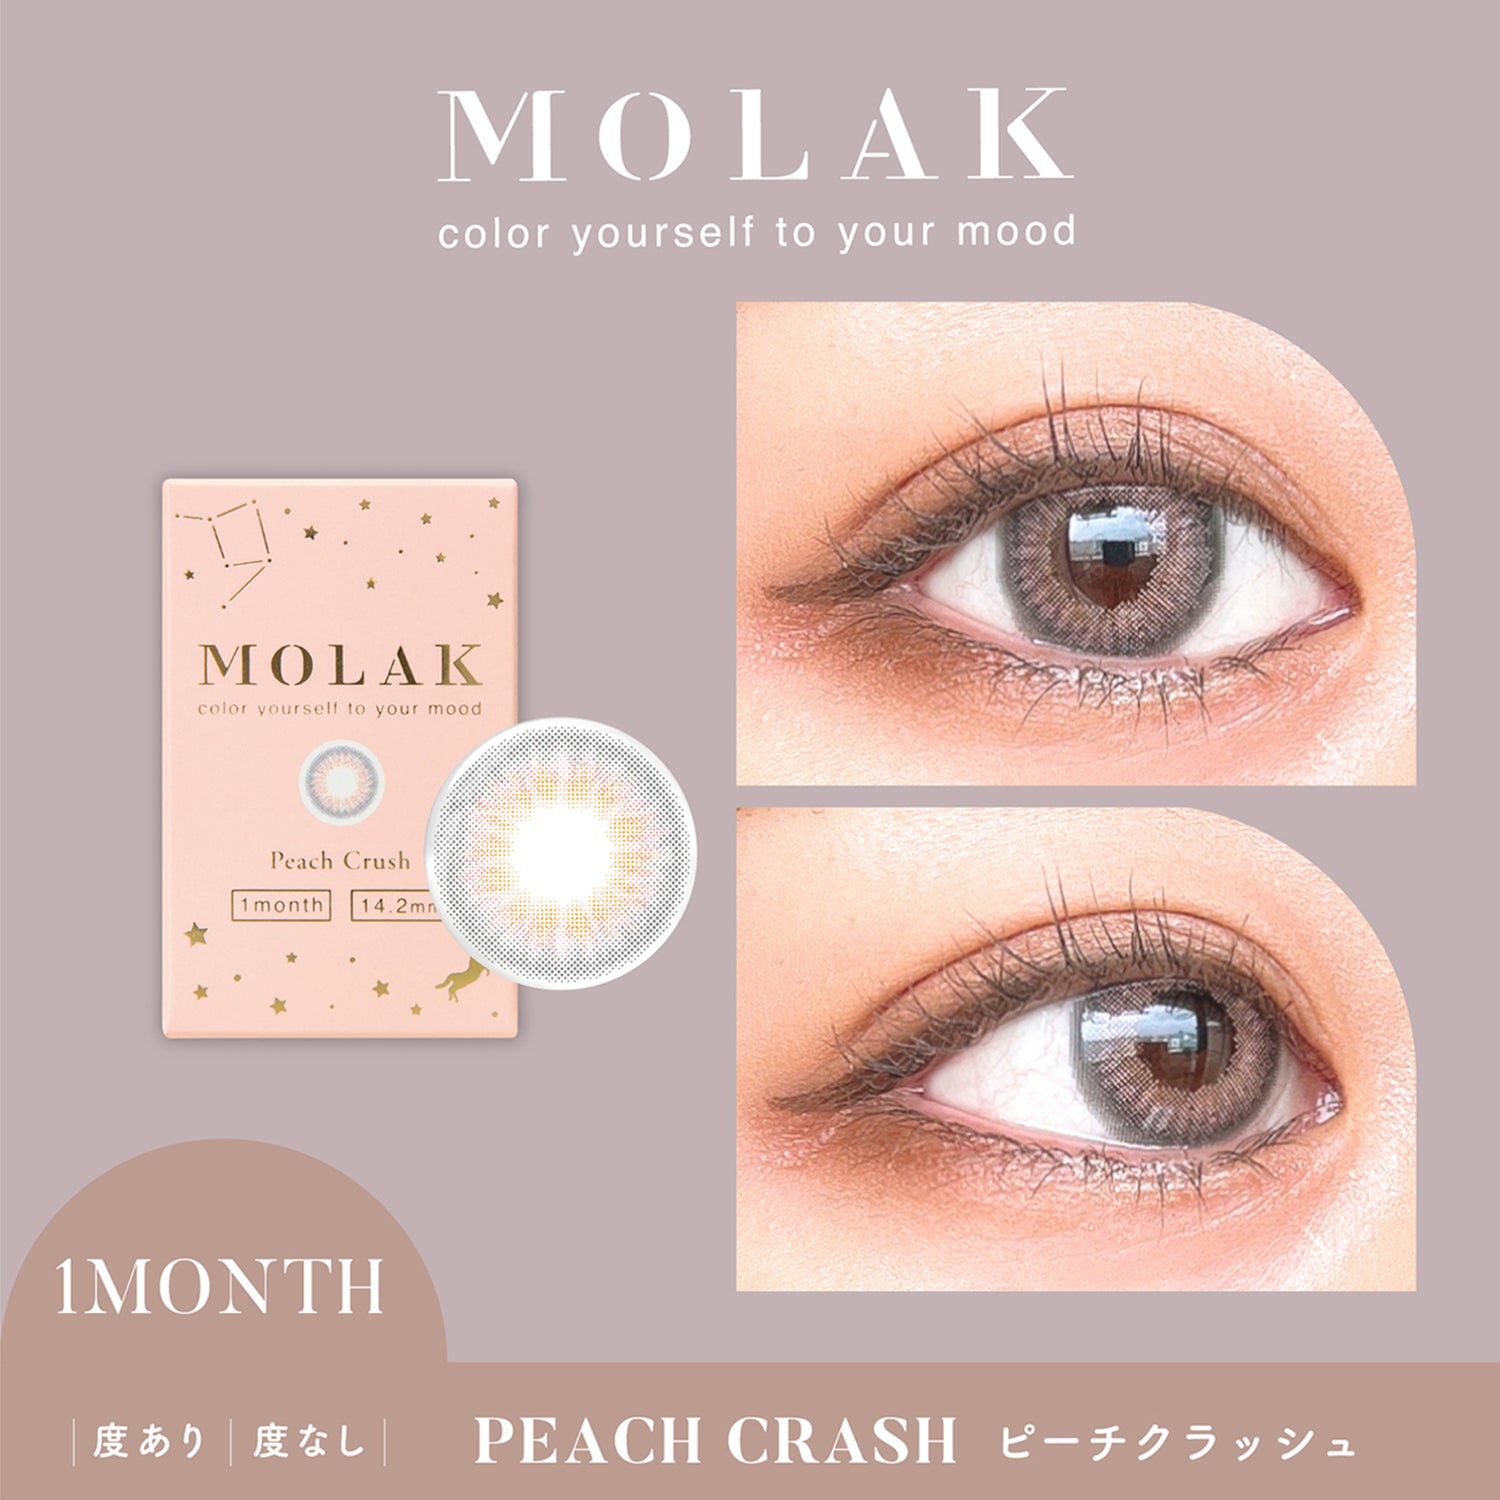 MOLAK 1Month Color Lens-Peach Crush 2pcs